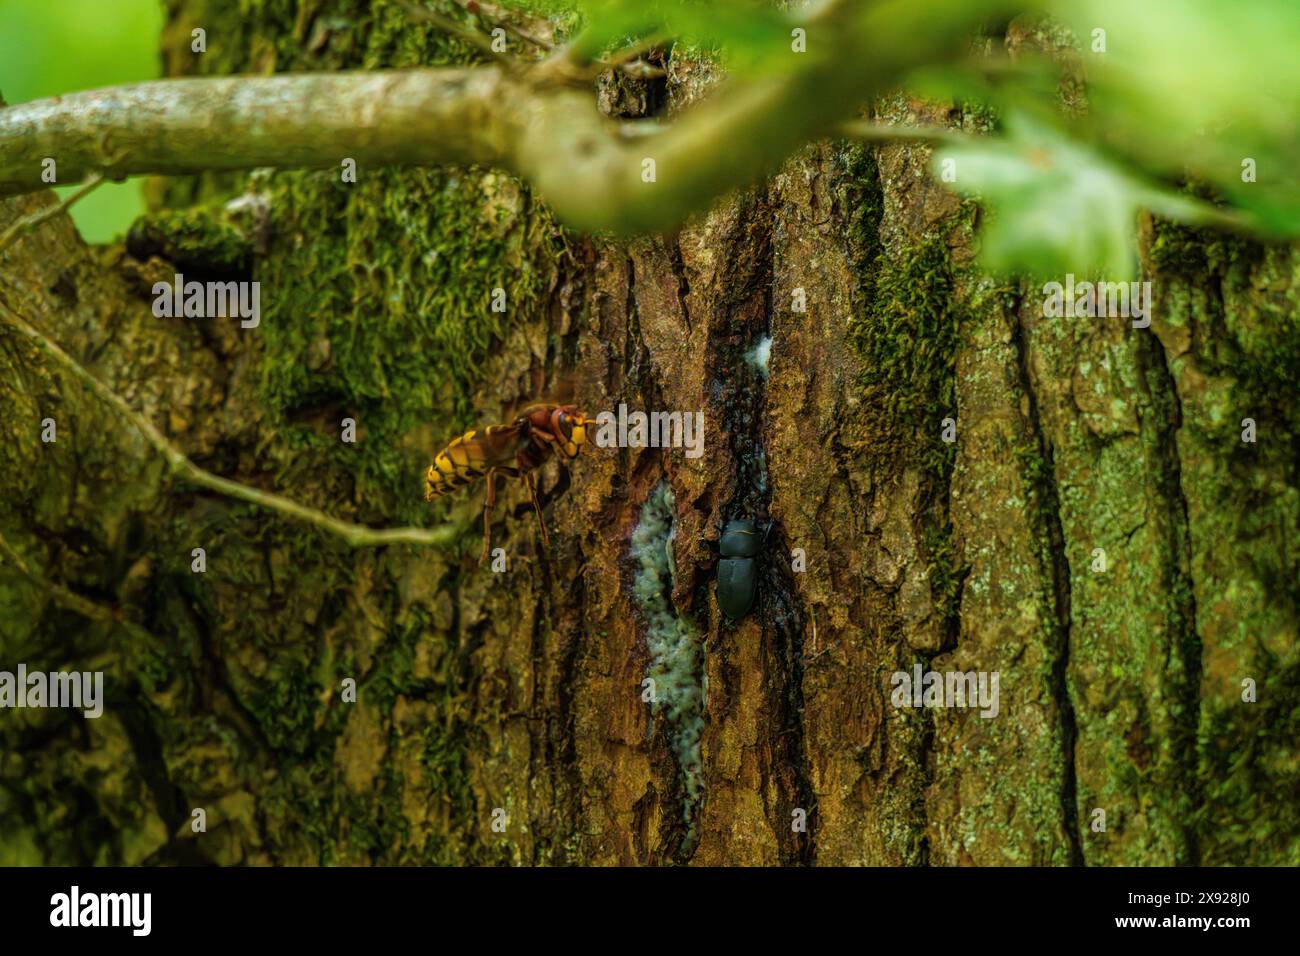 Un gros plan d'une guêpe perchée sur un tronc d'arbre, entourée de feuillage vert et de branches ligneuses, mettant en valeur la beauté complexe de cet insecte Banque D'Images